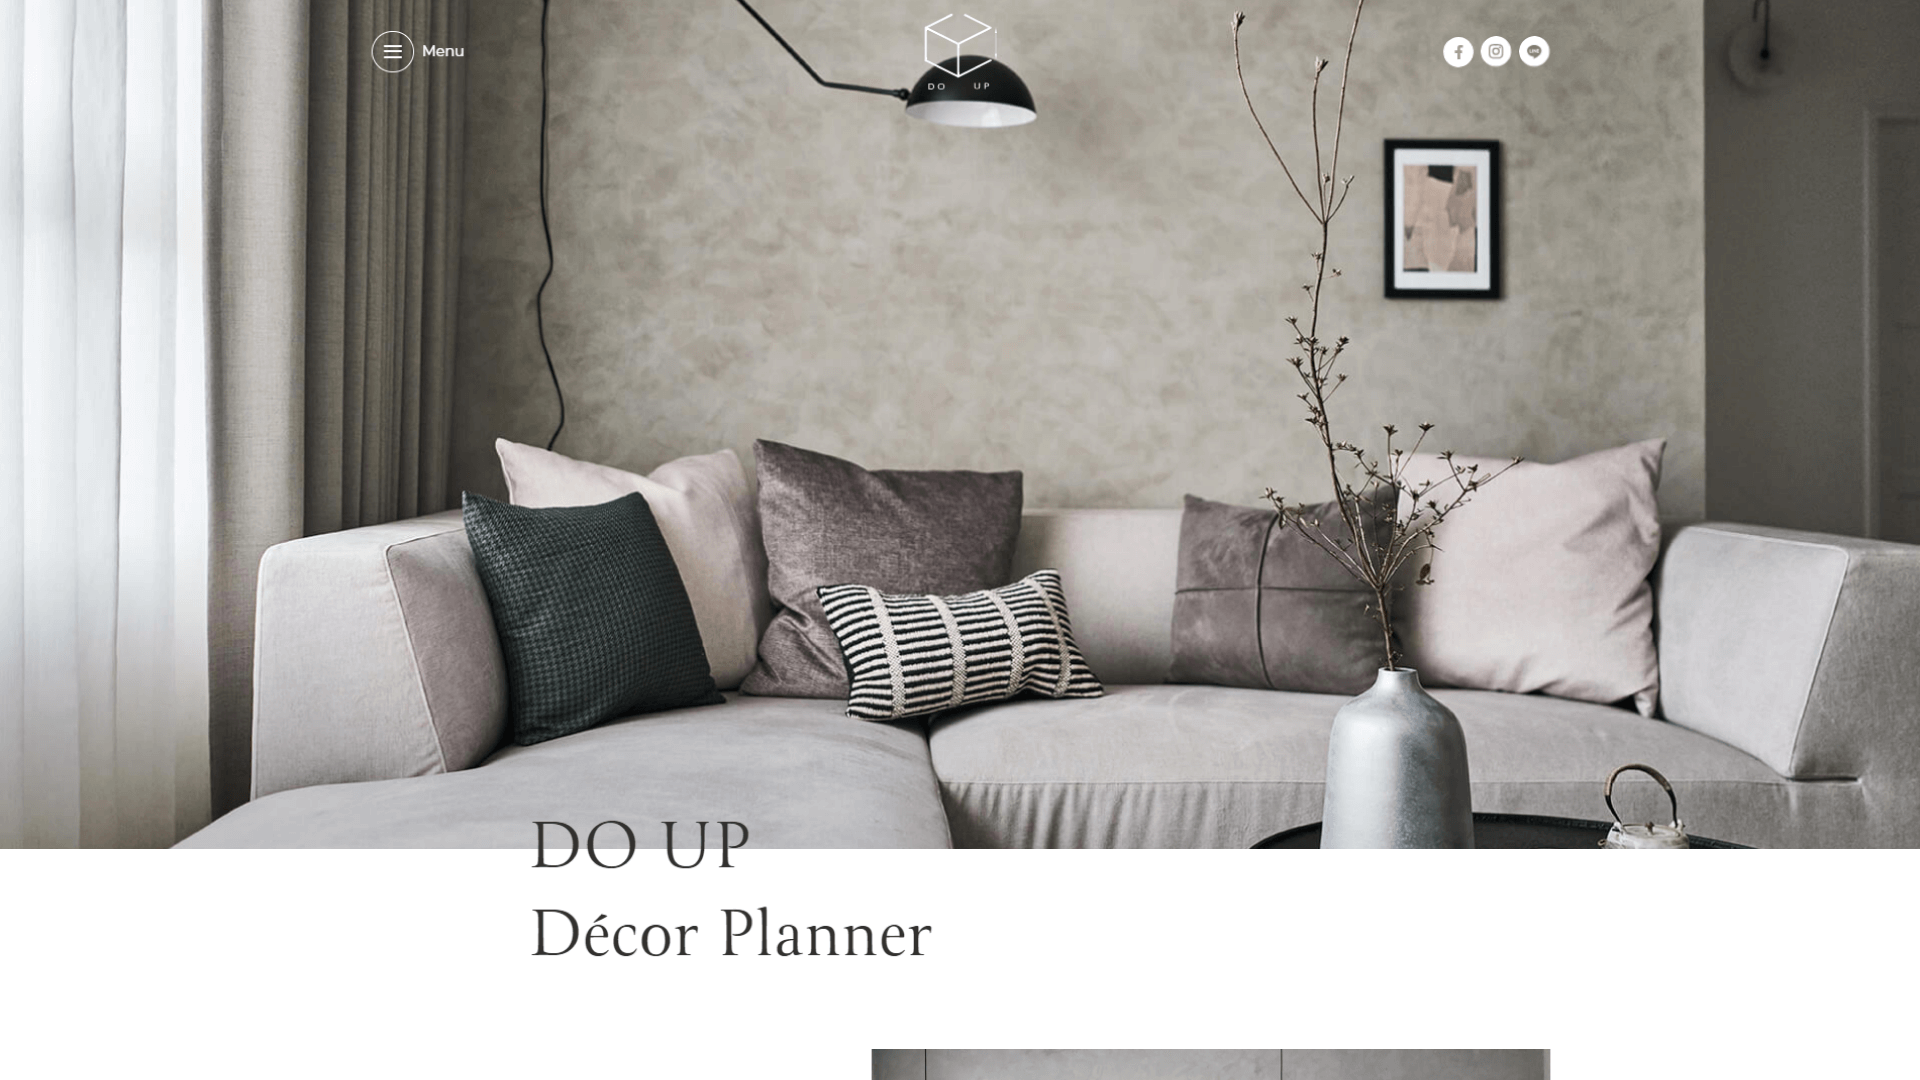 Web Design / DOUP Décor Planner